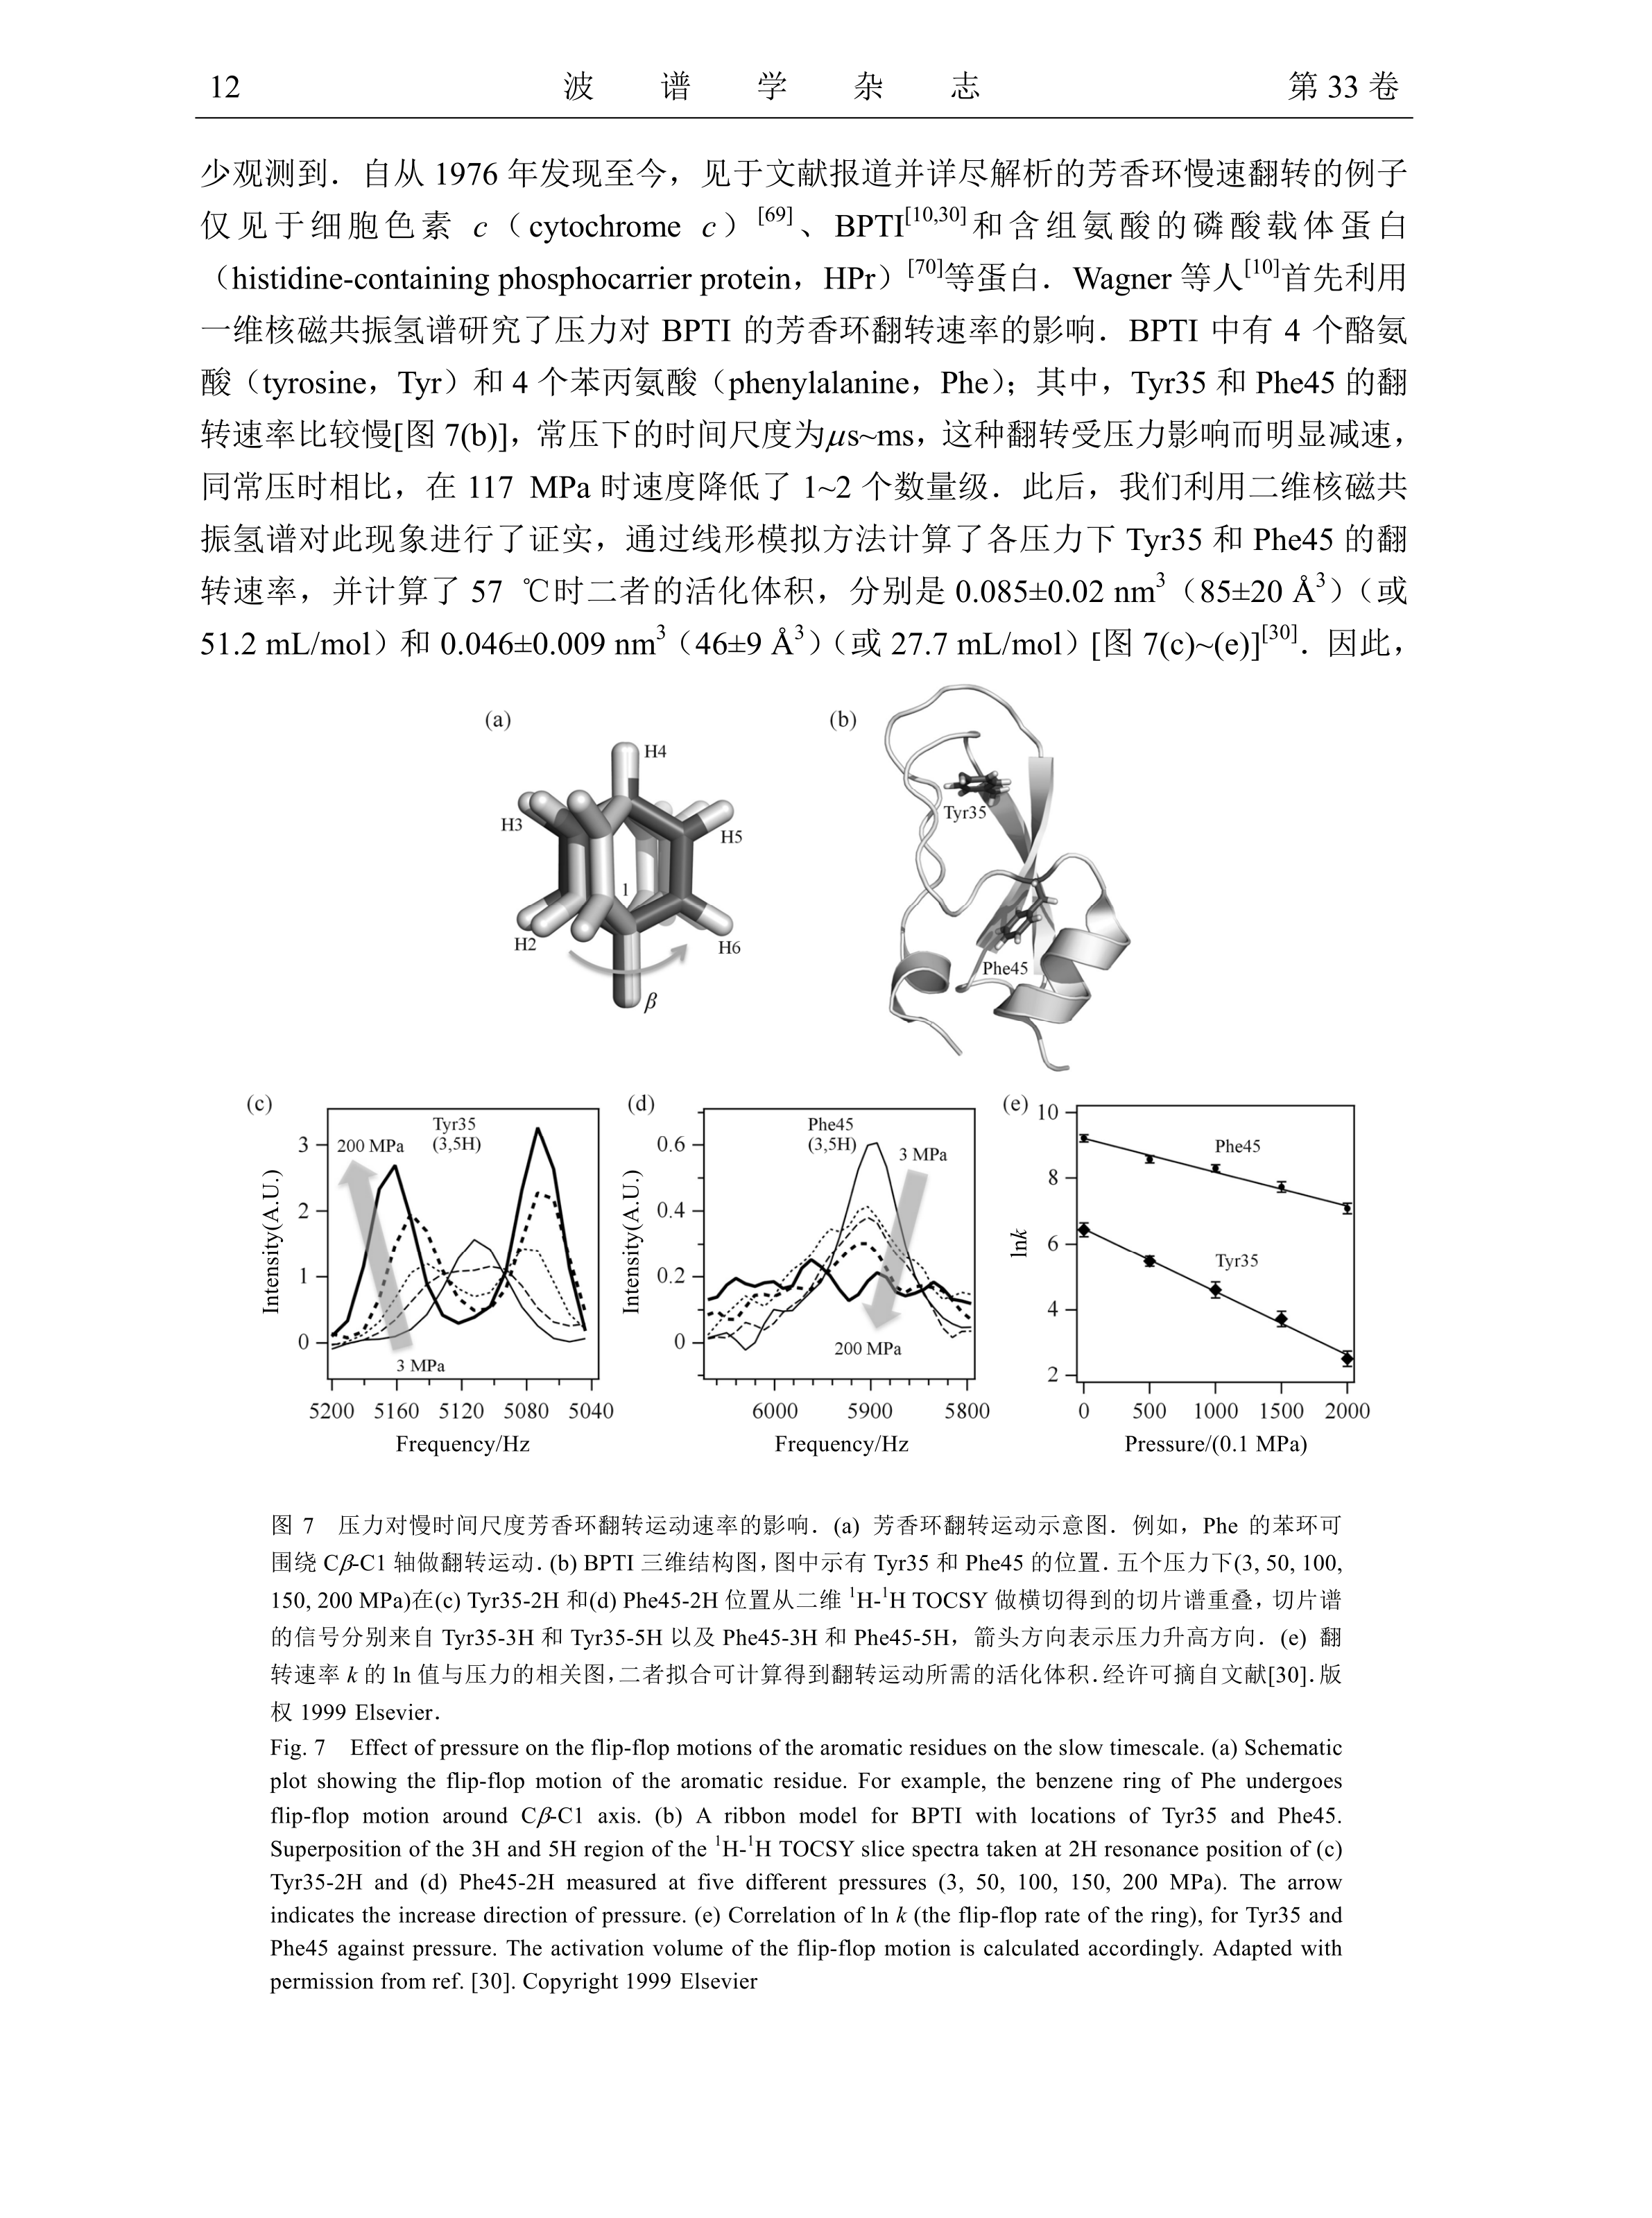 高压NMR在蛋白质结构和动力学研究中的应用_李华_12.png